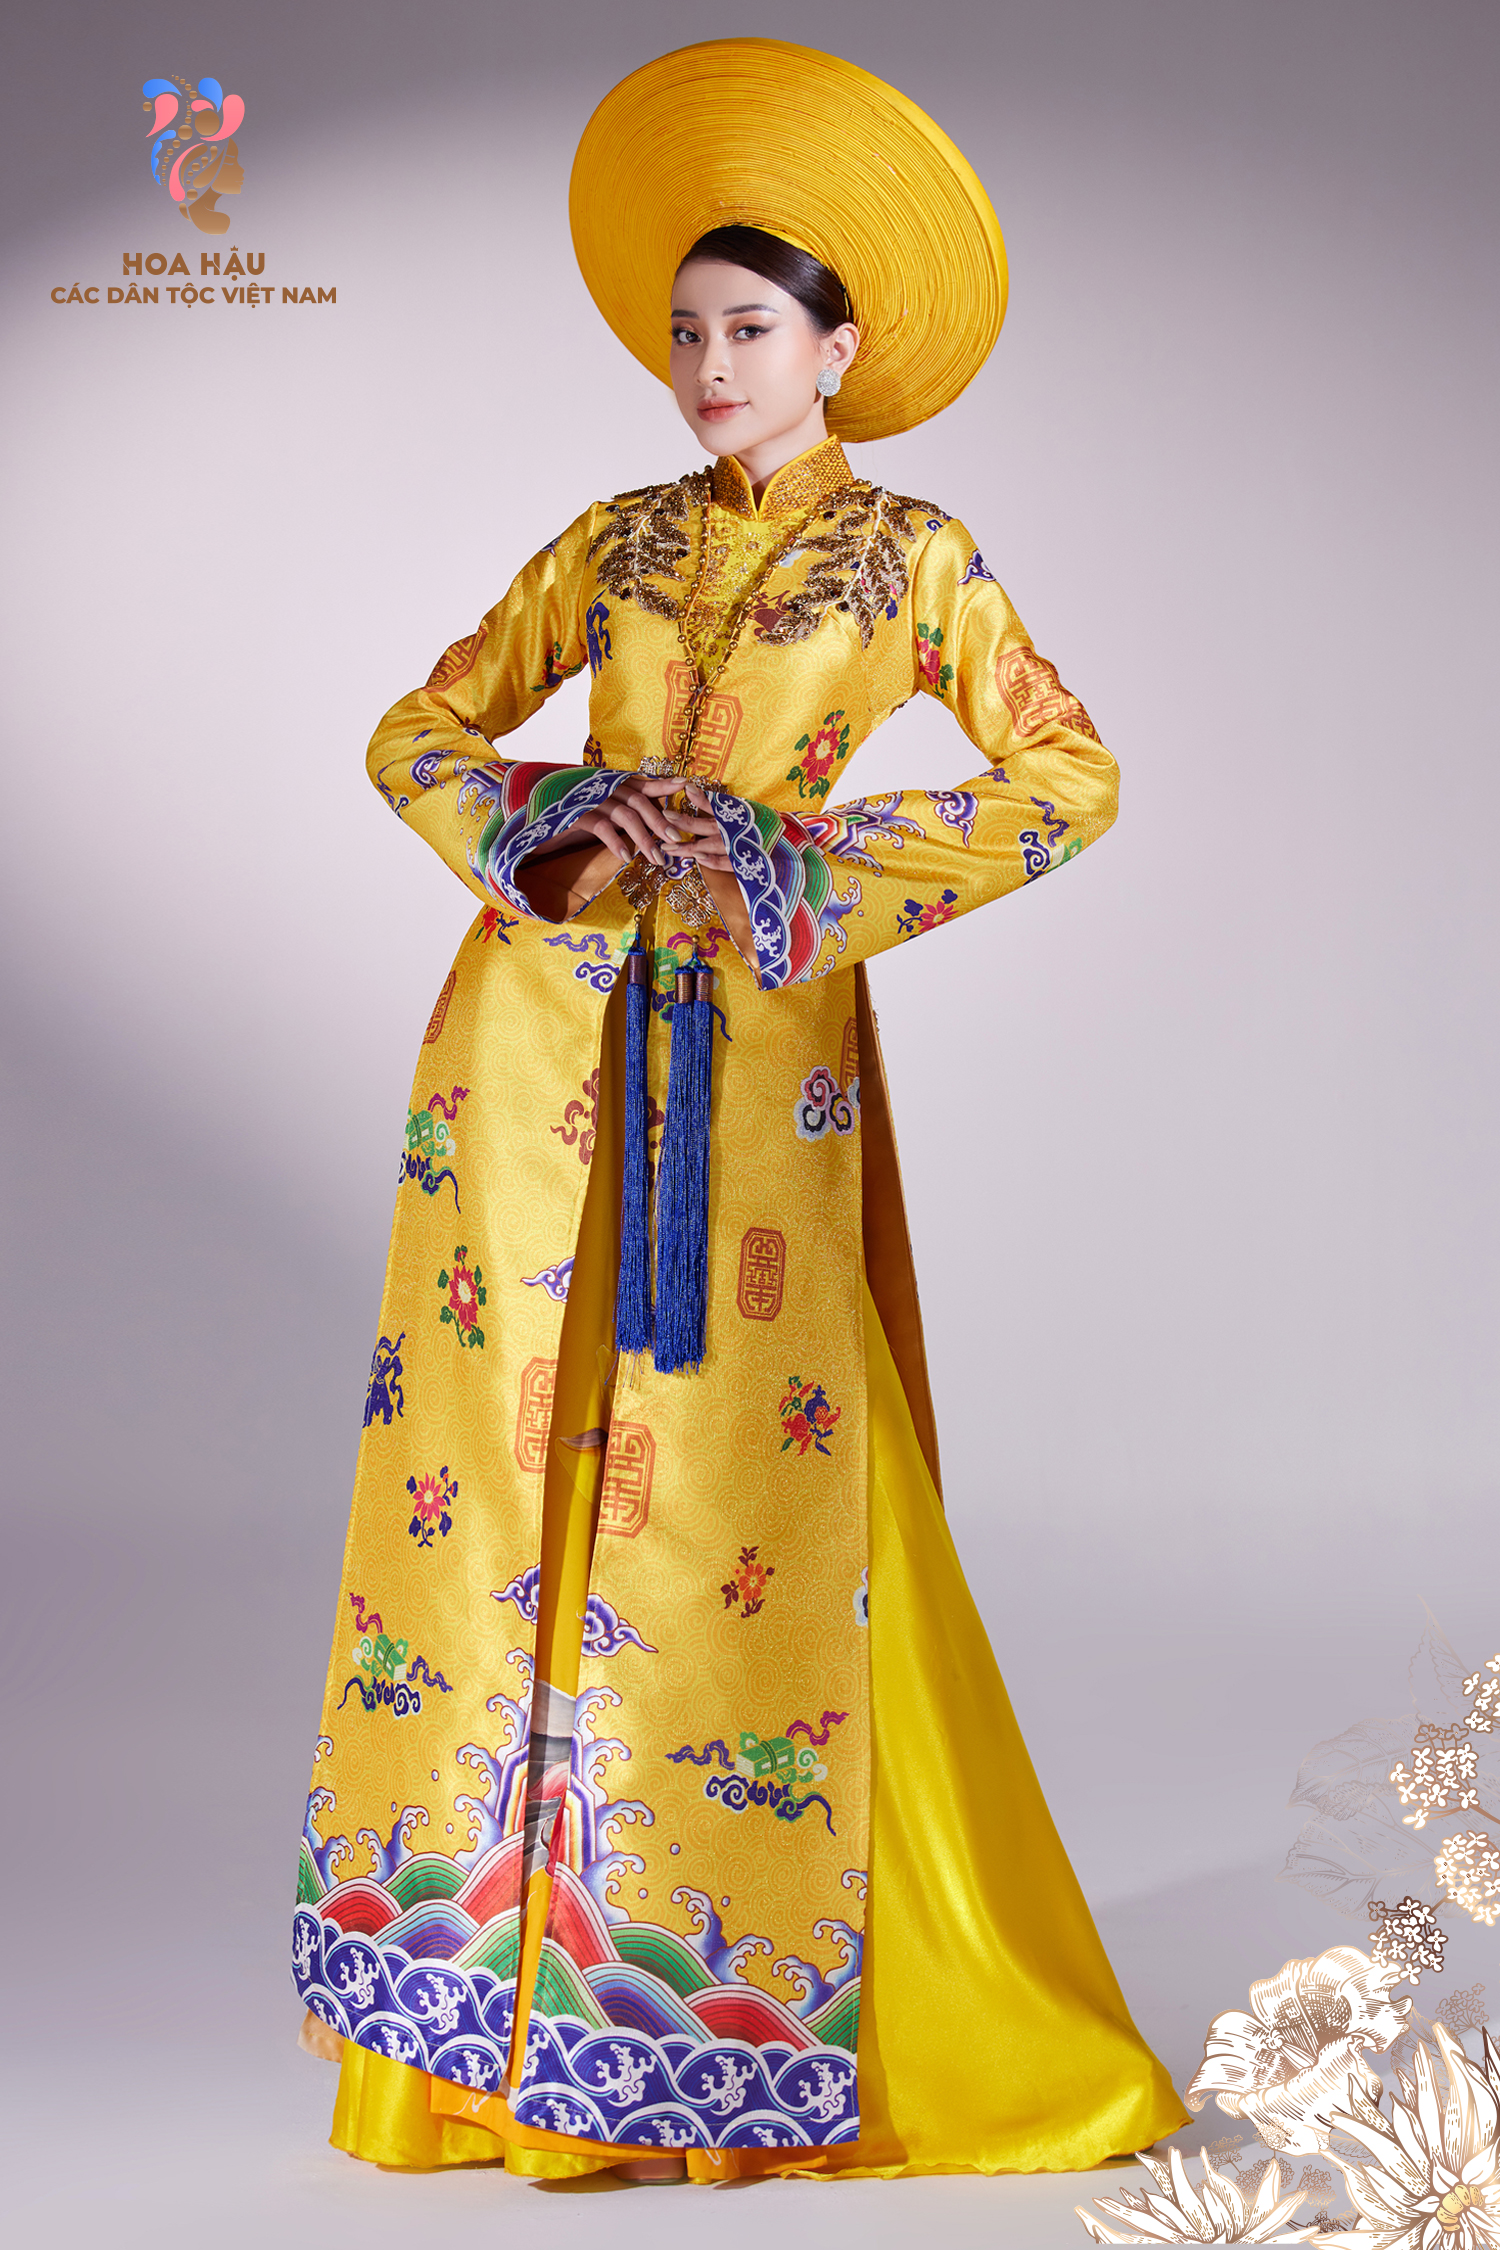 Trong tà áo dài truyền thống, thí sinh Vũ Thị Thảo Ly khoe hình thể hấp dẫn.  Kết hợp thêm những chiếc mấn, tóc bới cao cùng các phụ kiện trang sức khác giúp cô mang đến vẻ đẹp vừa nữ tính vừa hiện đại.